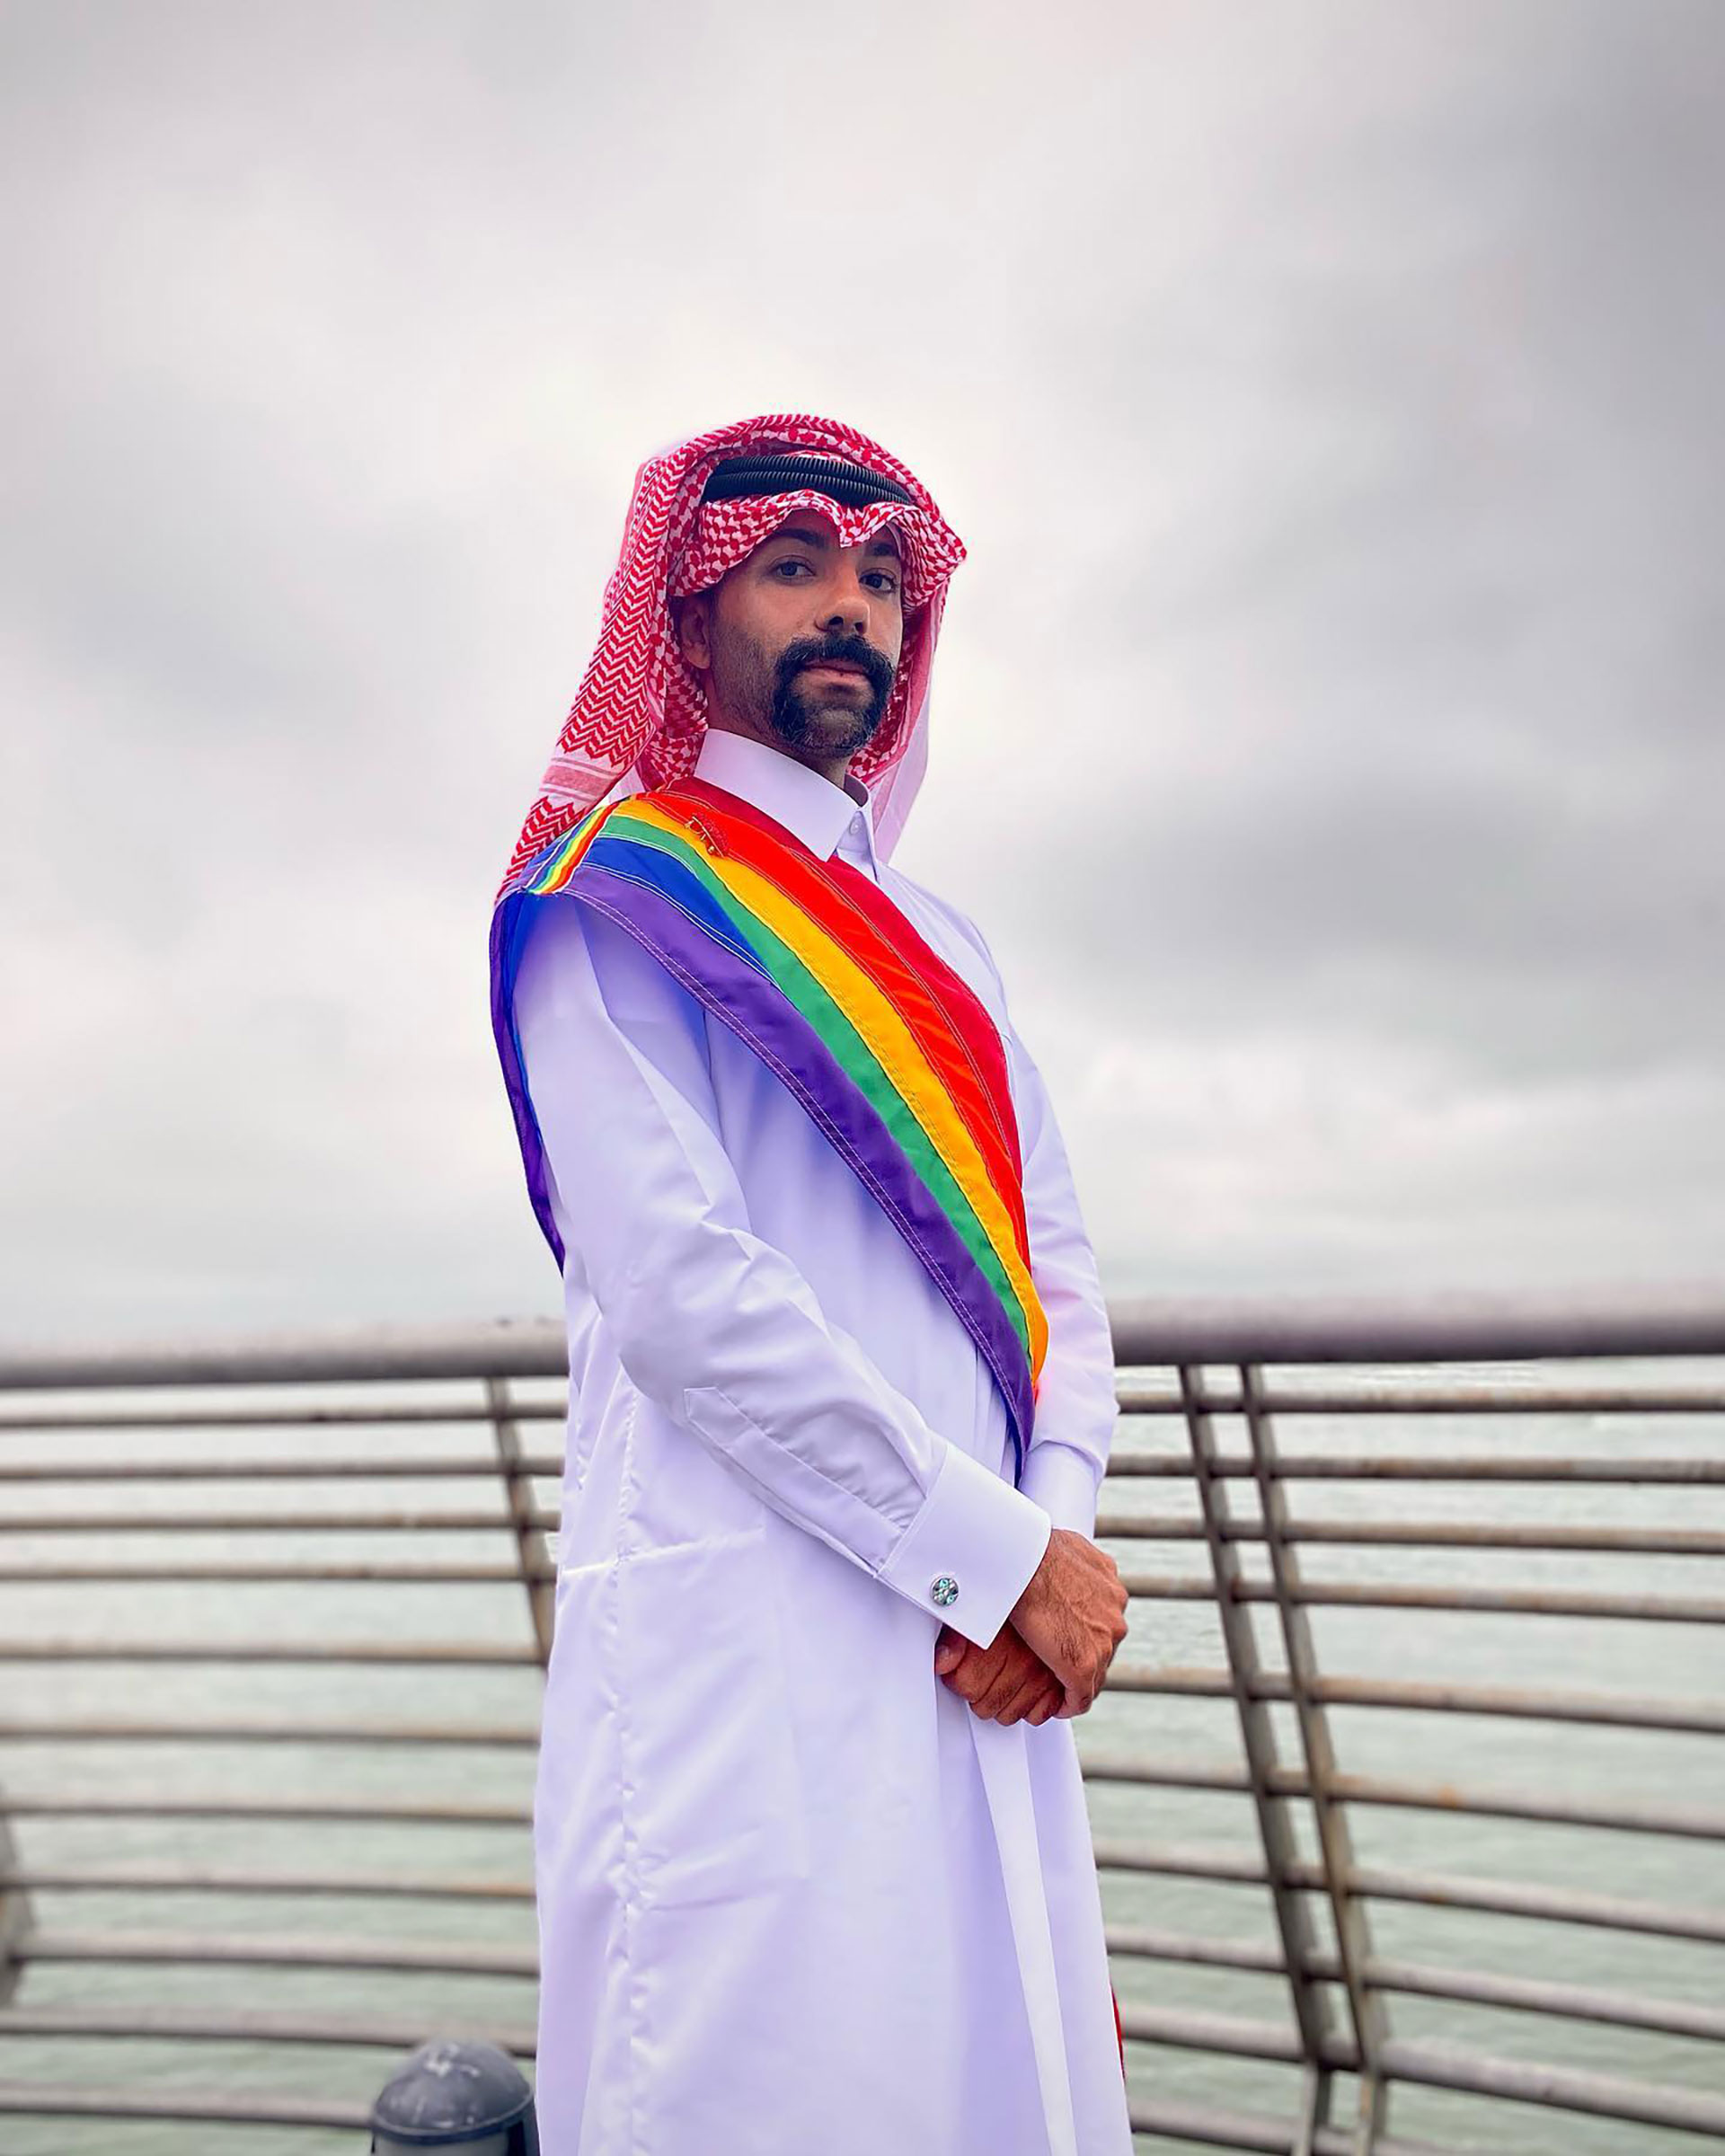 "Desde joven sabía que no encajaba en el país. No era seguro. La comunidad LGBT de Qatar o aquellos que aún residen en Qatar son perseguidos con más severidad que los visitantes", dijo